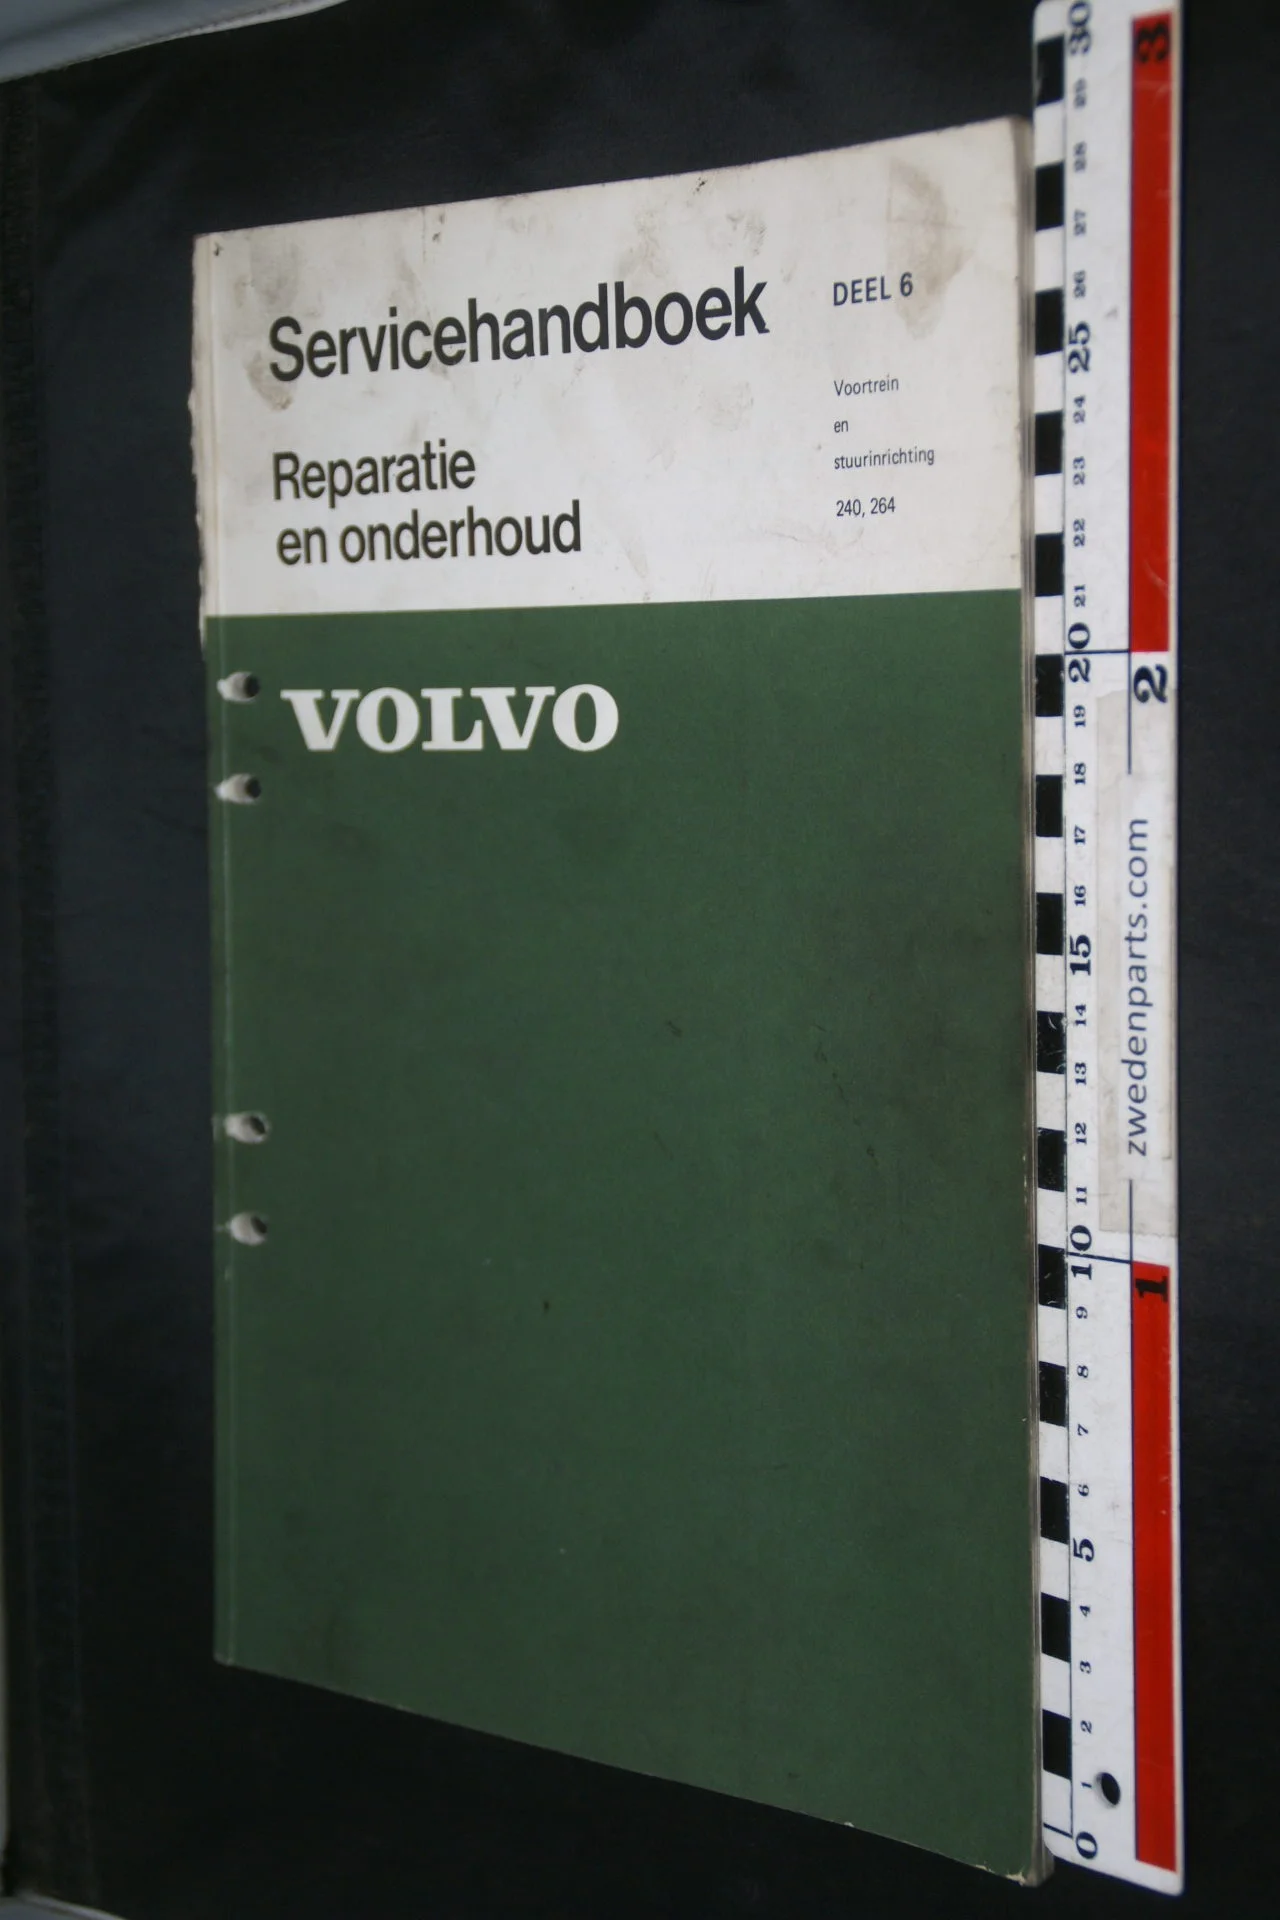 DSC08632 1974 origineel Volvo 240, 264 servicehandboek  6 voortrein en stuurinrichting 1 van 500 TP 11046-1